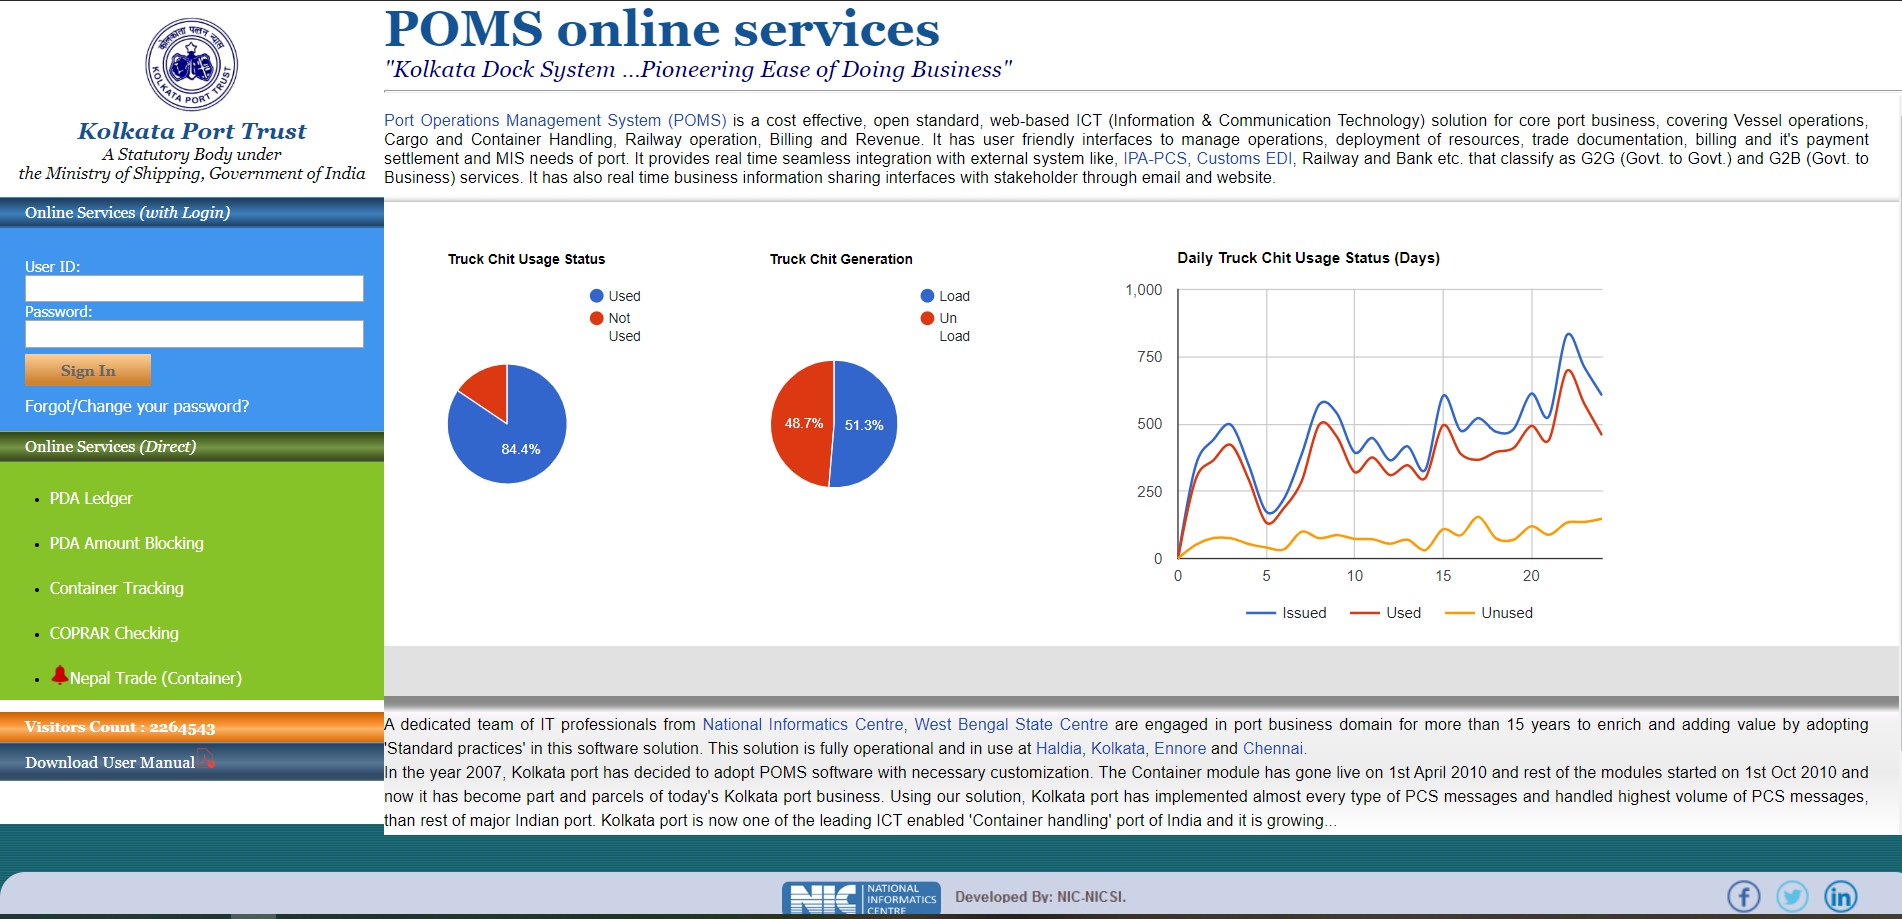 POMS Online Services